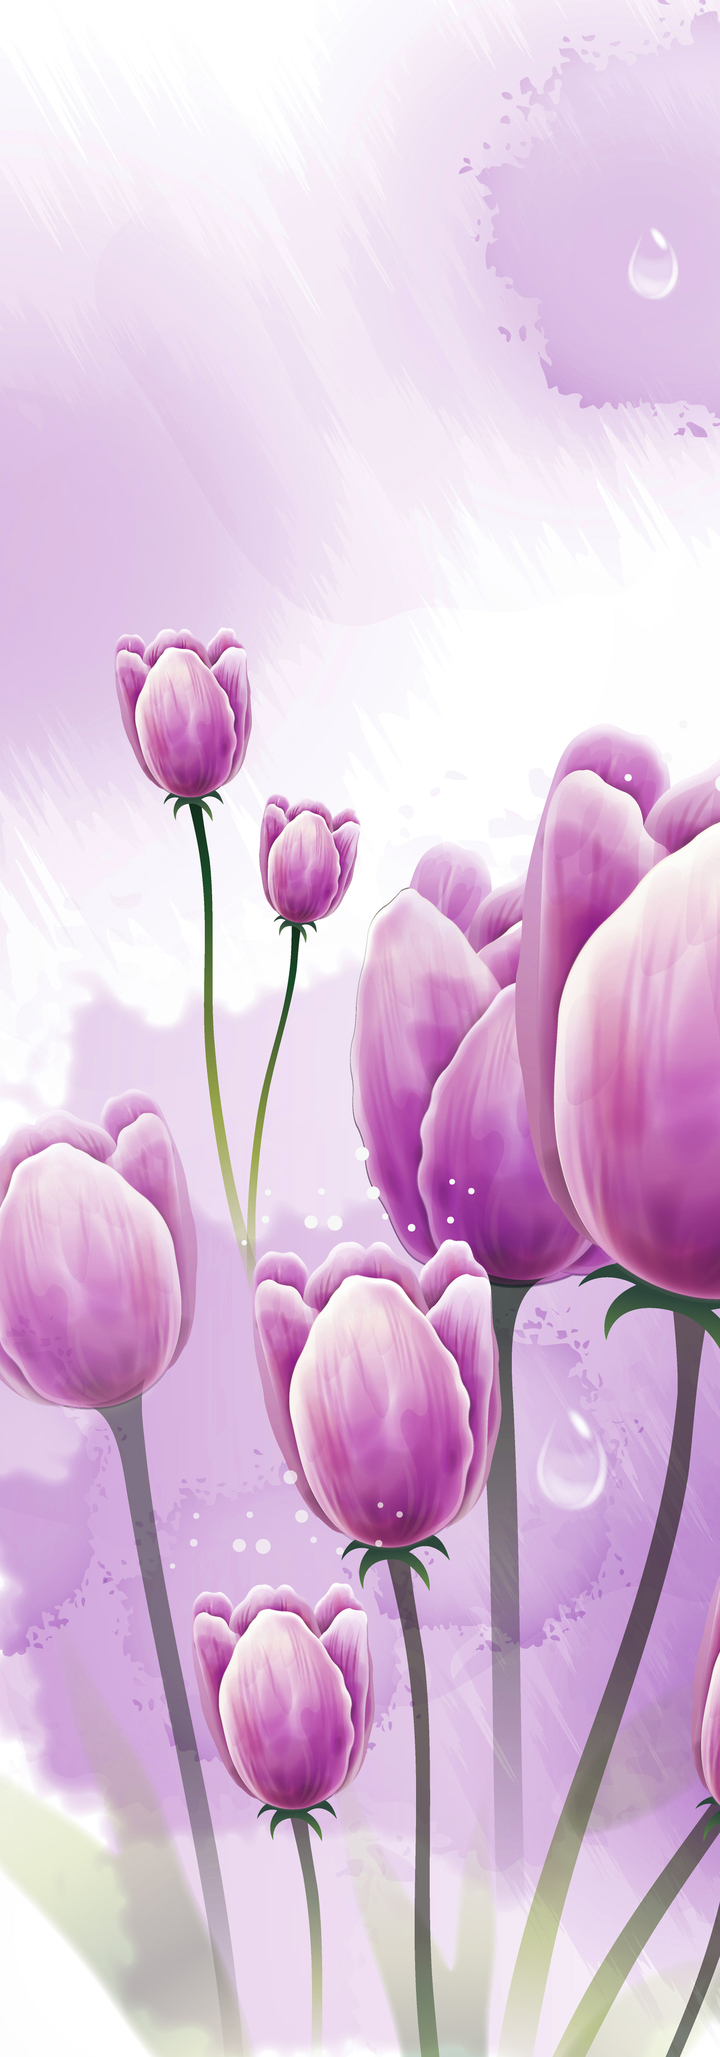 Tranh tô màu hoa tulip hồng vươn trên nền trời xanh T1053